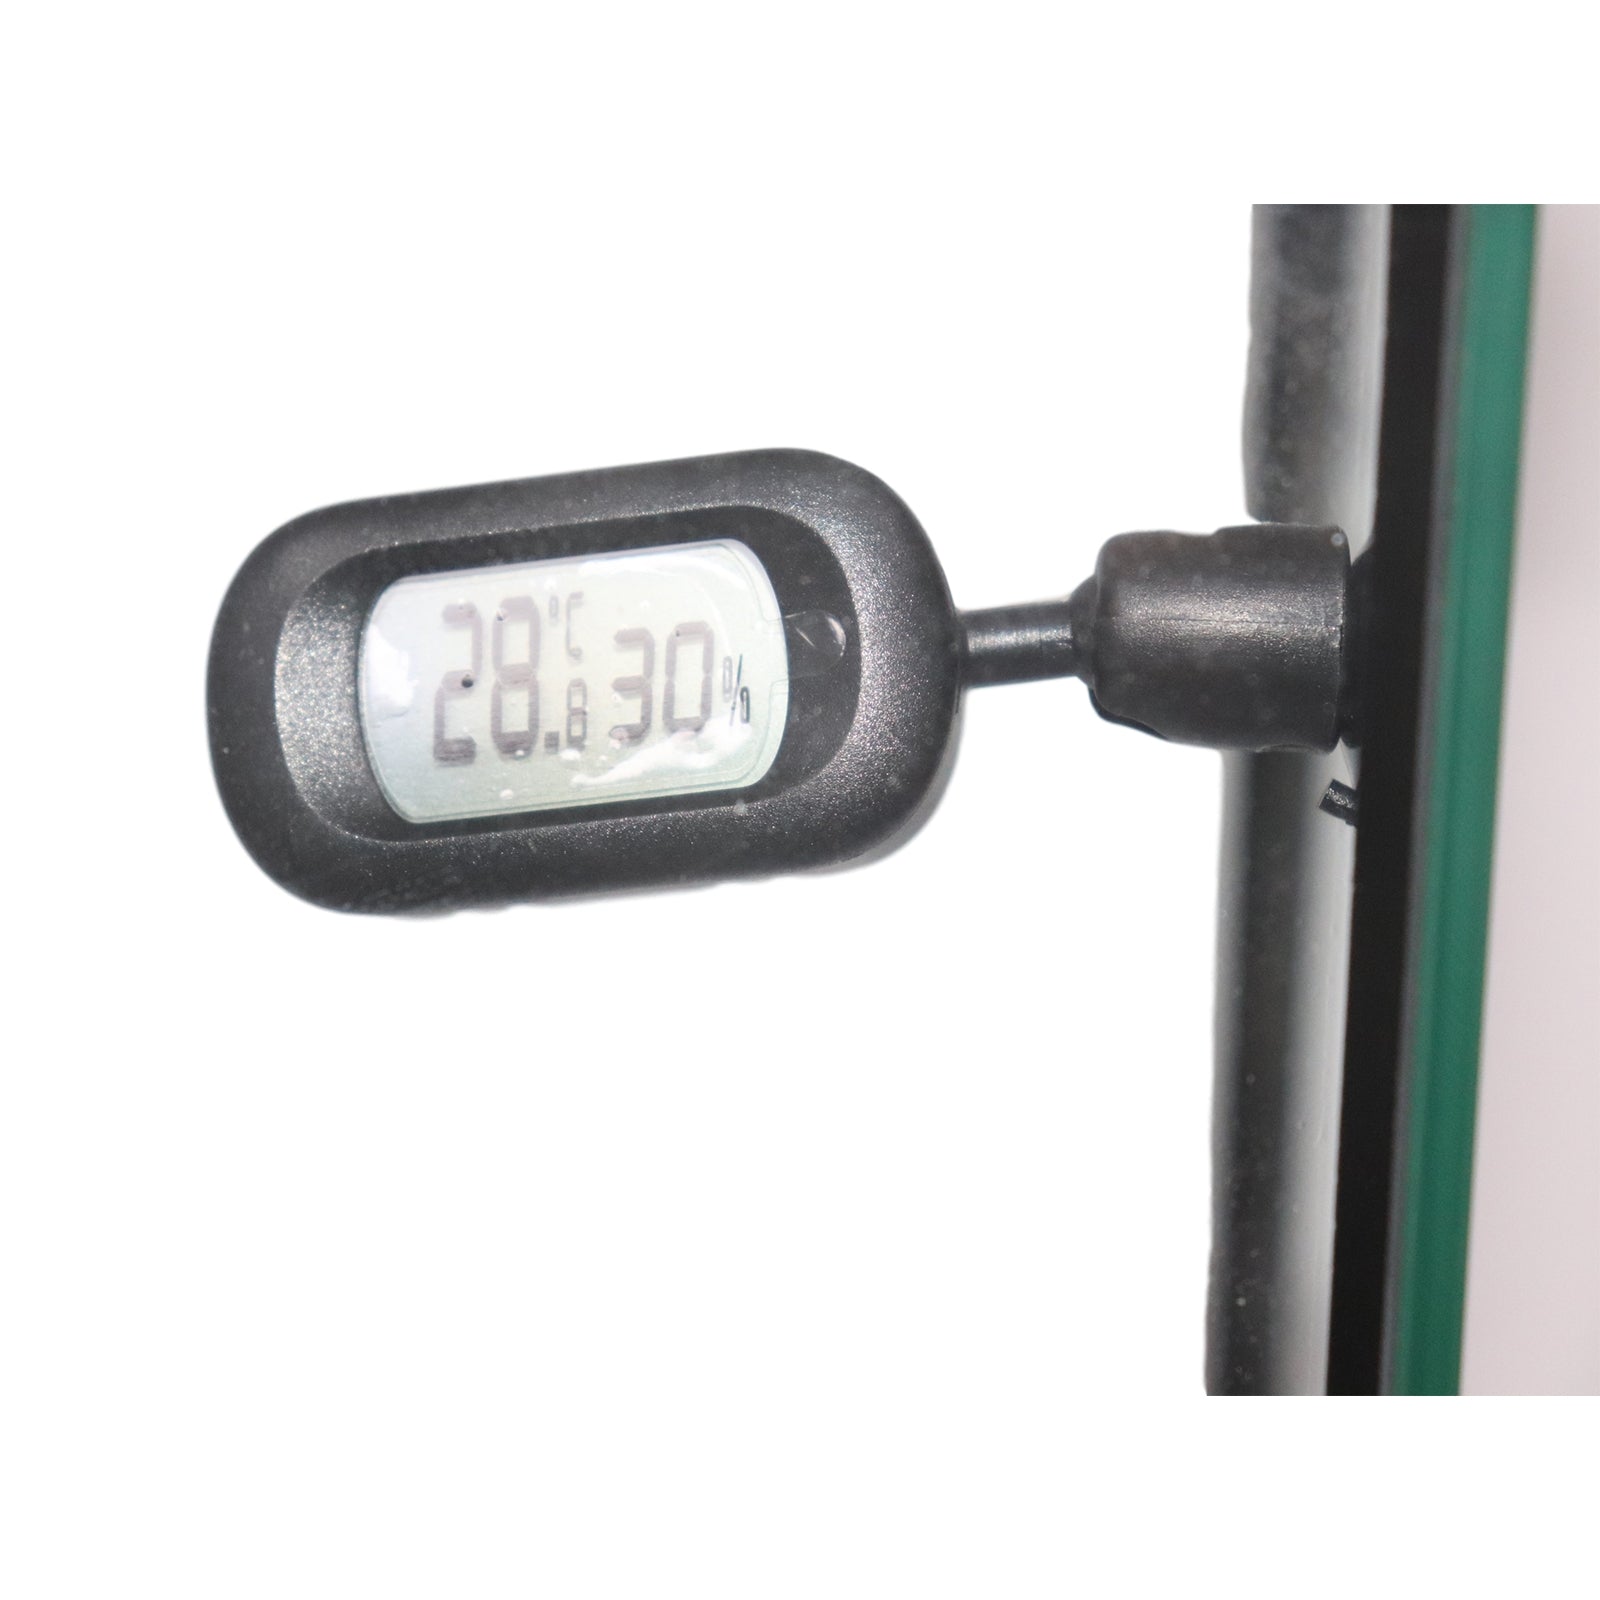 Thermometre + Hygrometre Digital 360° - Reptizoo